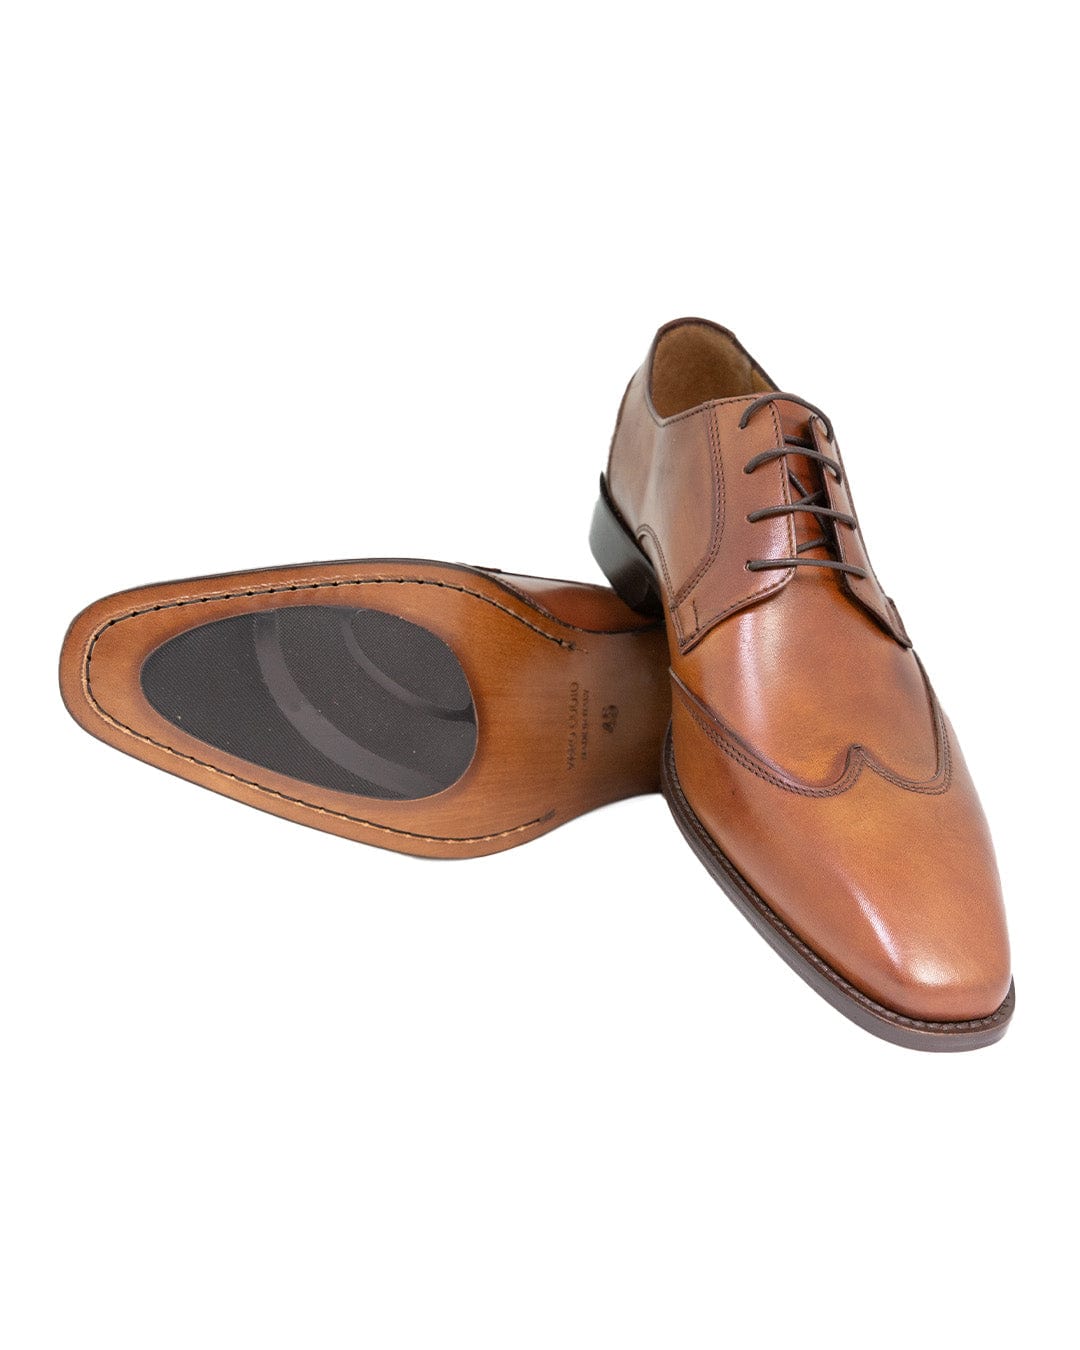 Gagliardi Shoes Gagliardi Tan Made in Italy Wing Tip Oxford Shoes